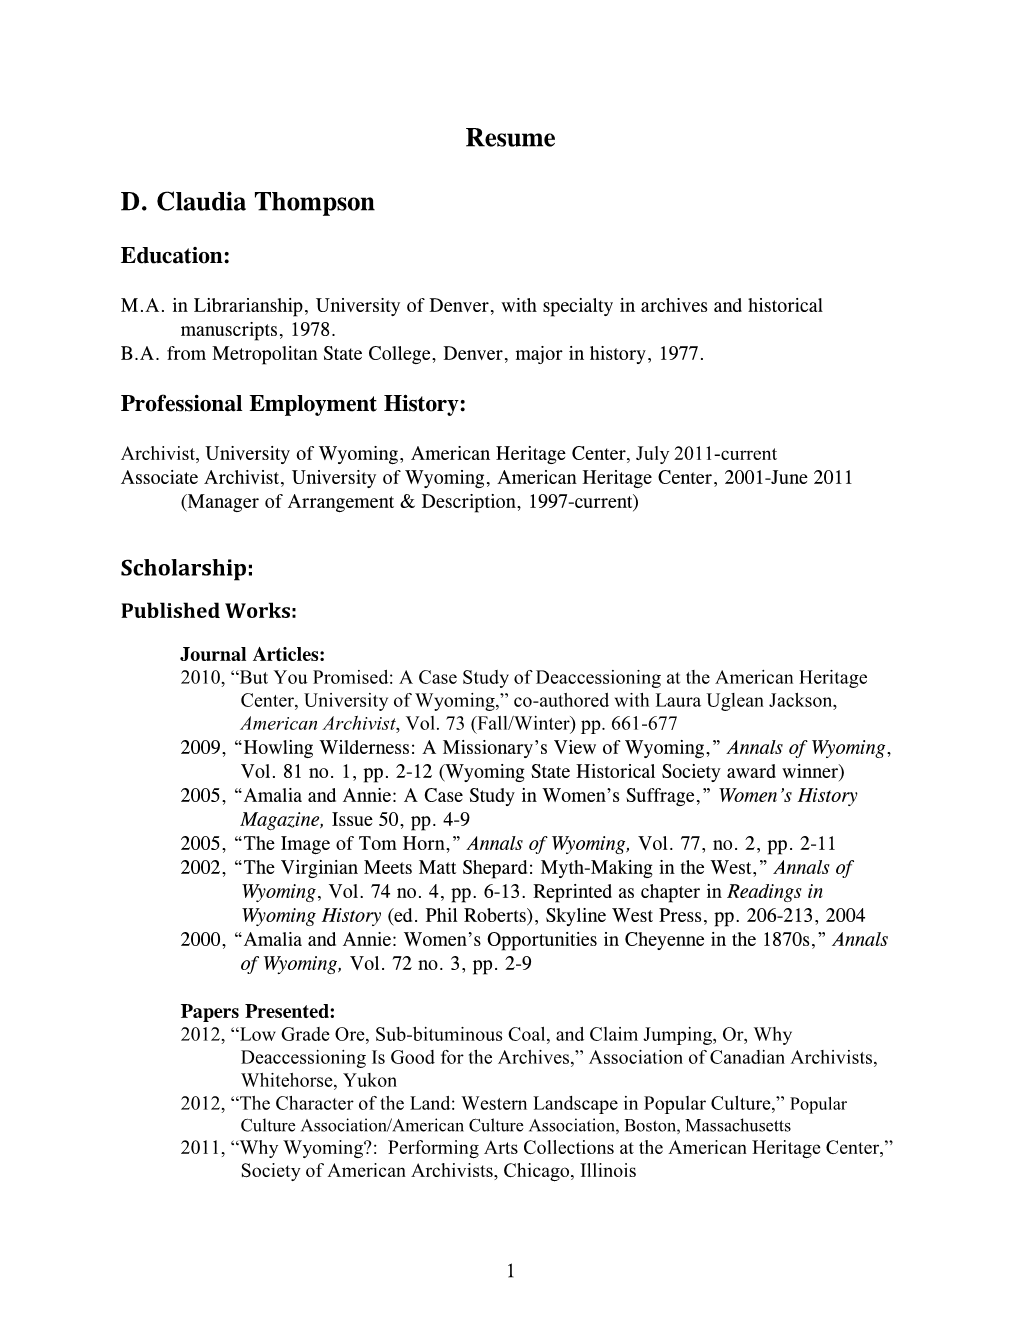 Resume D. Claudia Thompson